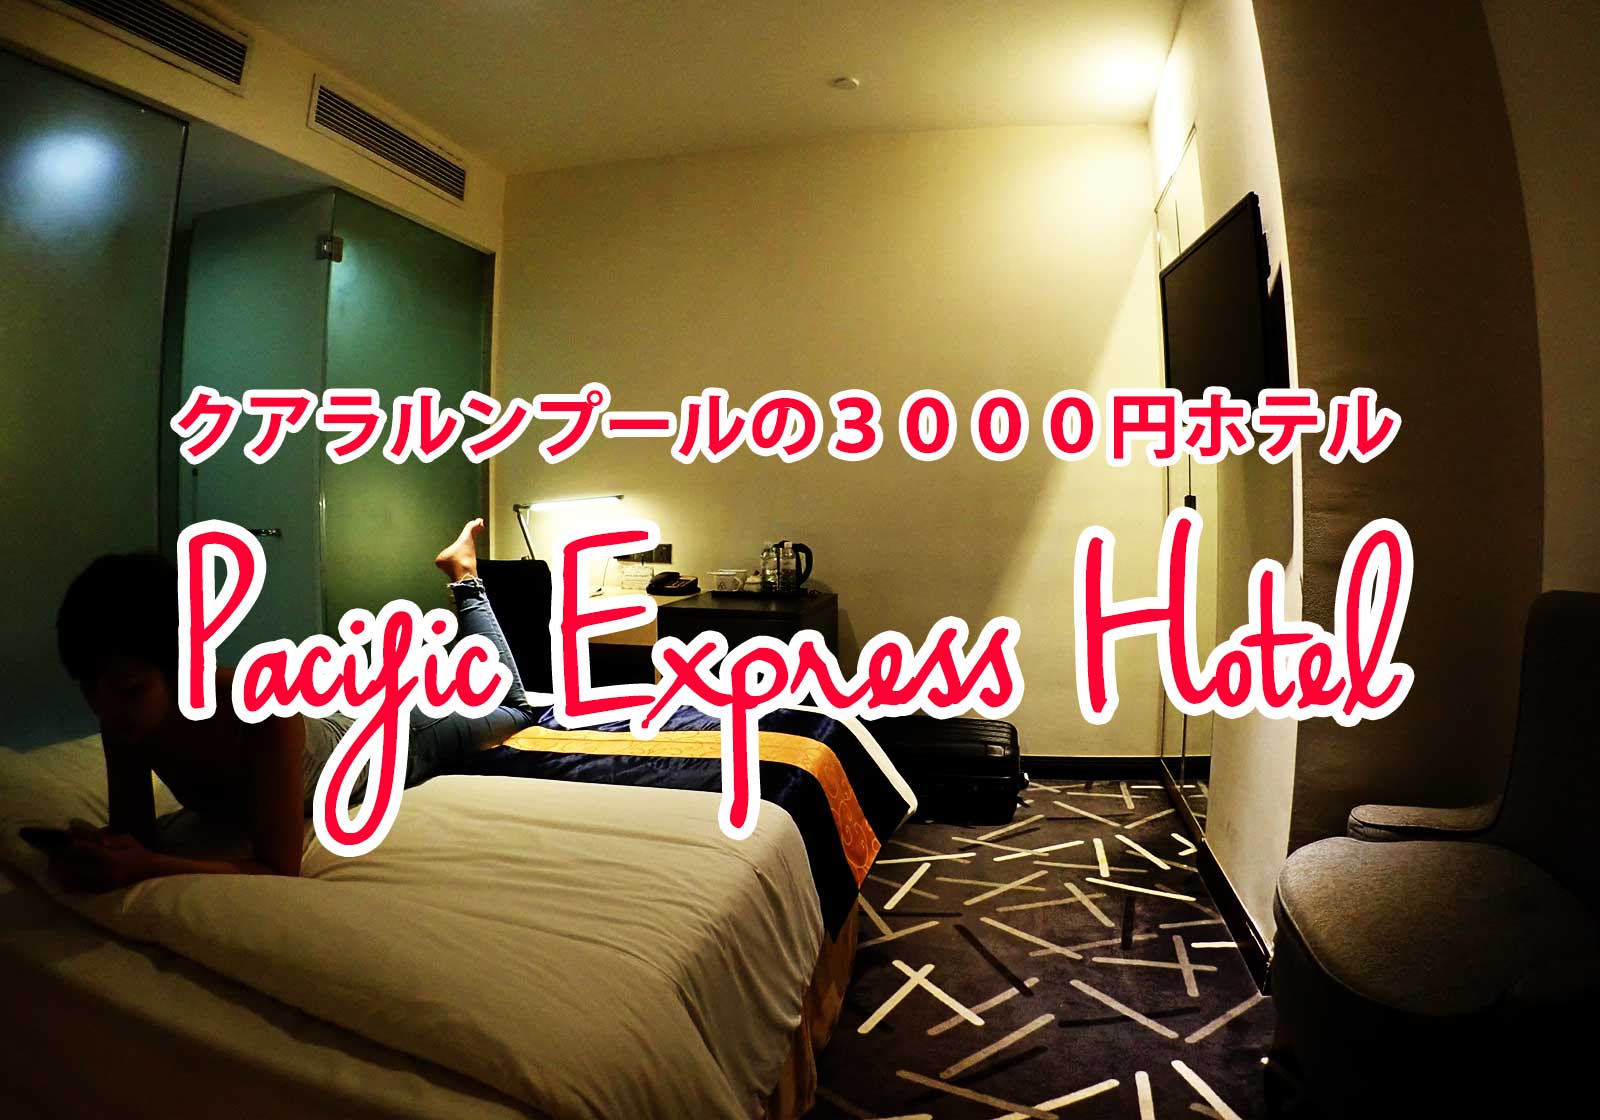 クアラルンプール3000円ホテル セントラルマーケット真裏 ジムプールあり Pacific Express Hotel Webマーケティングと旅とアート